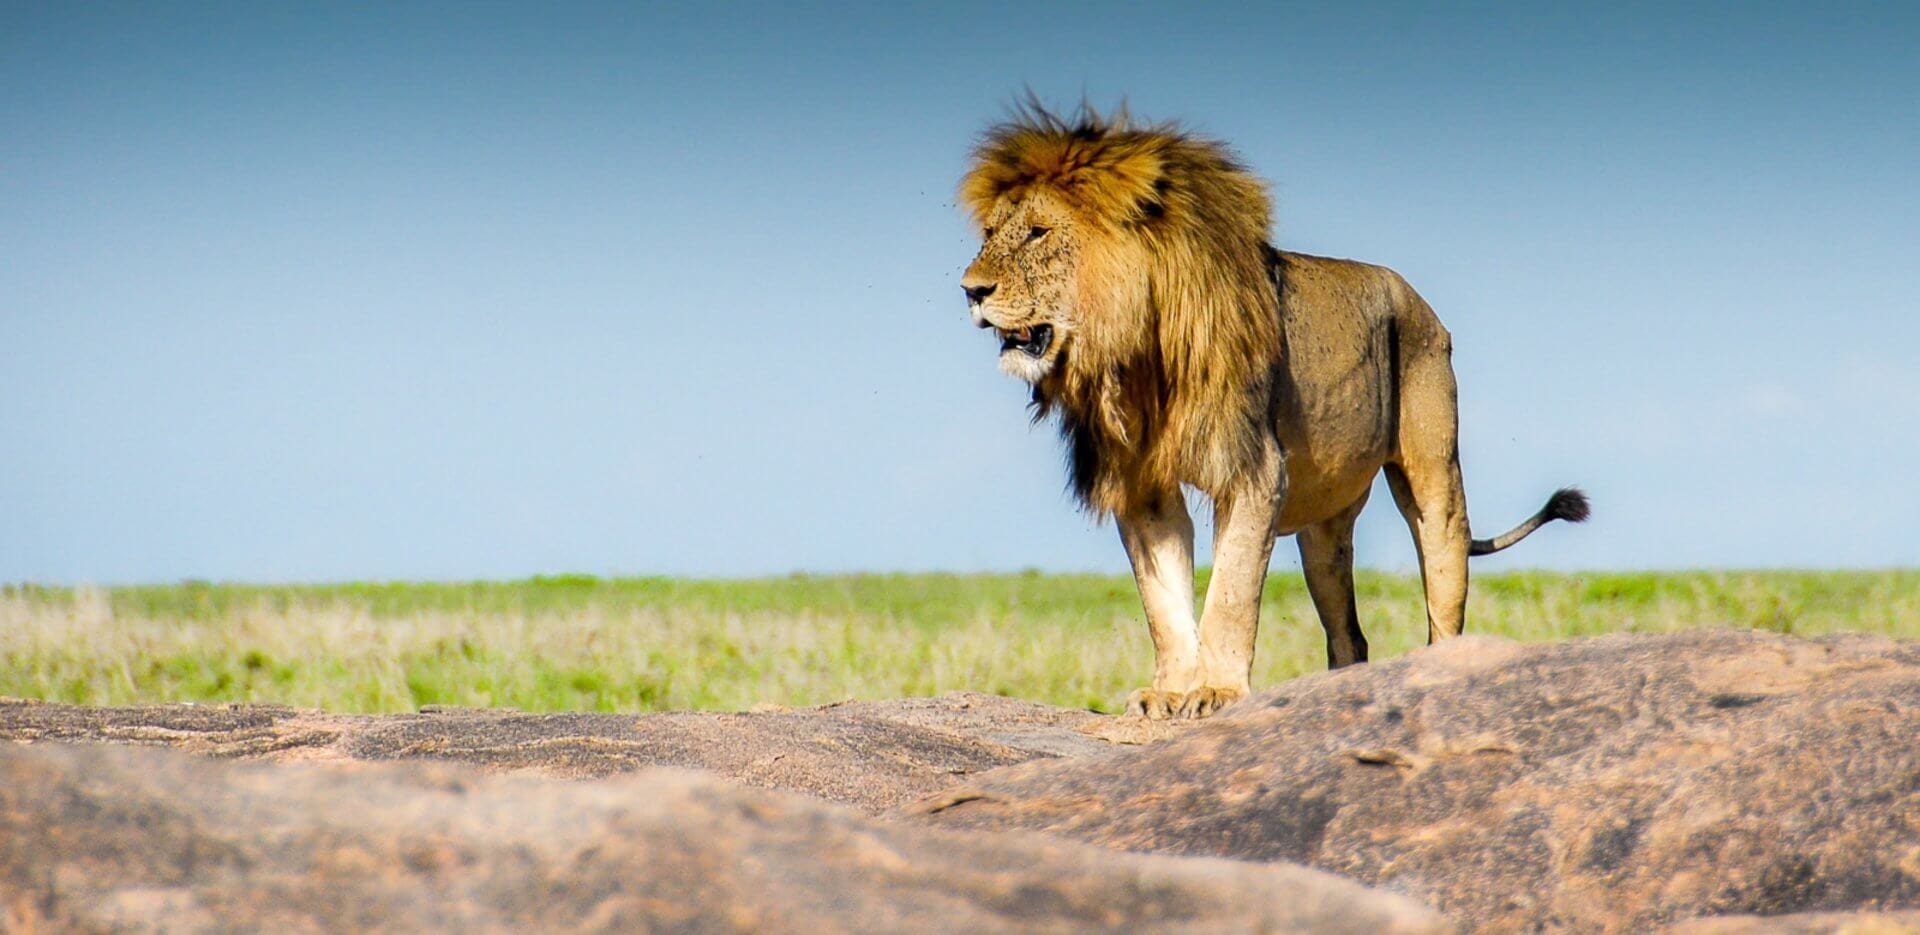 Lion sighting on a safari in northern Tanzania